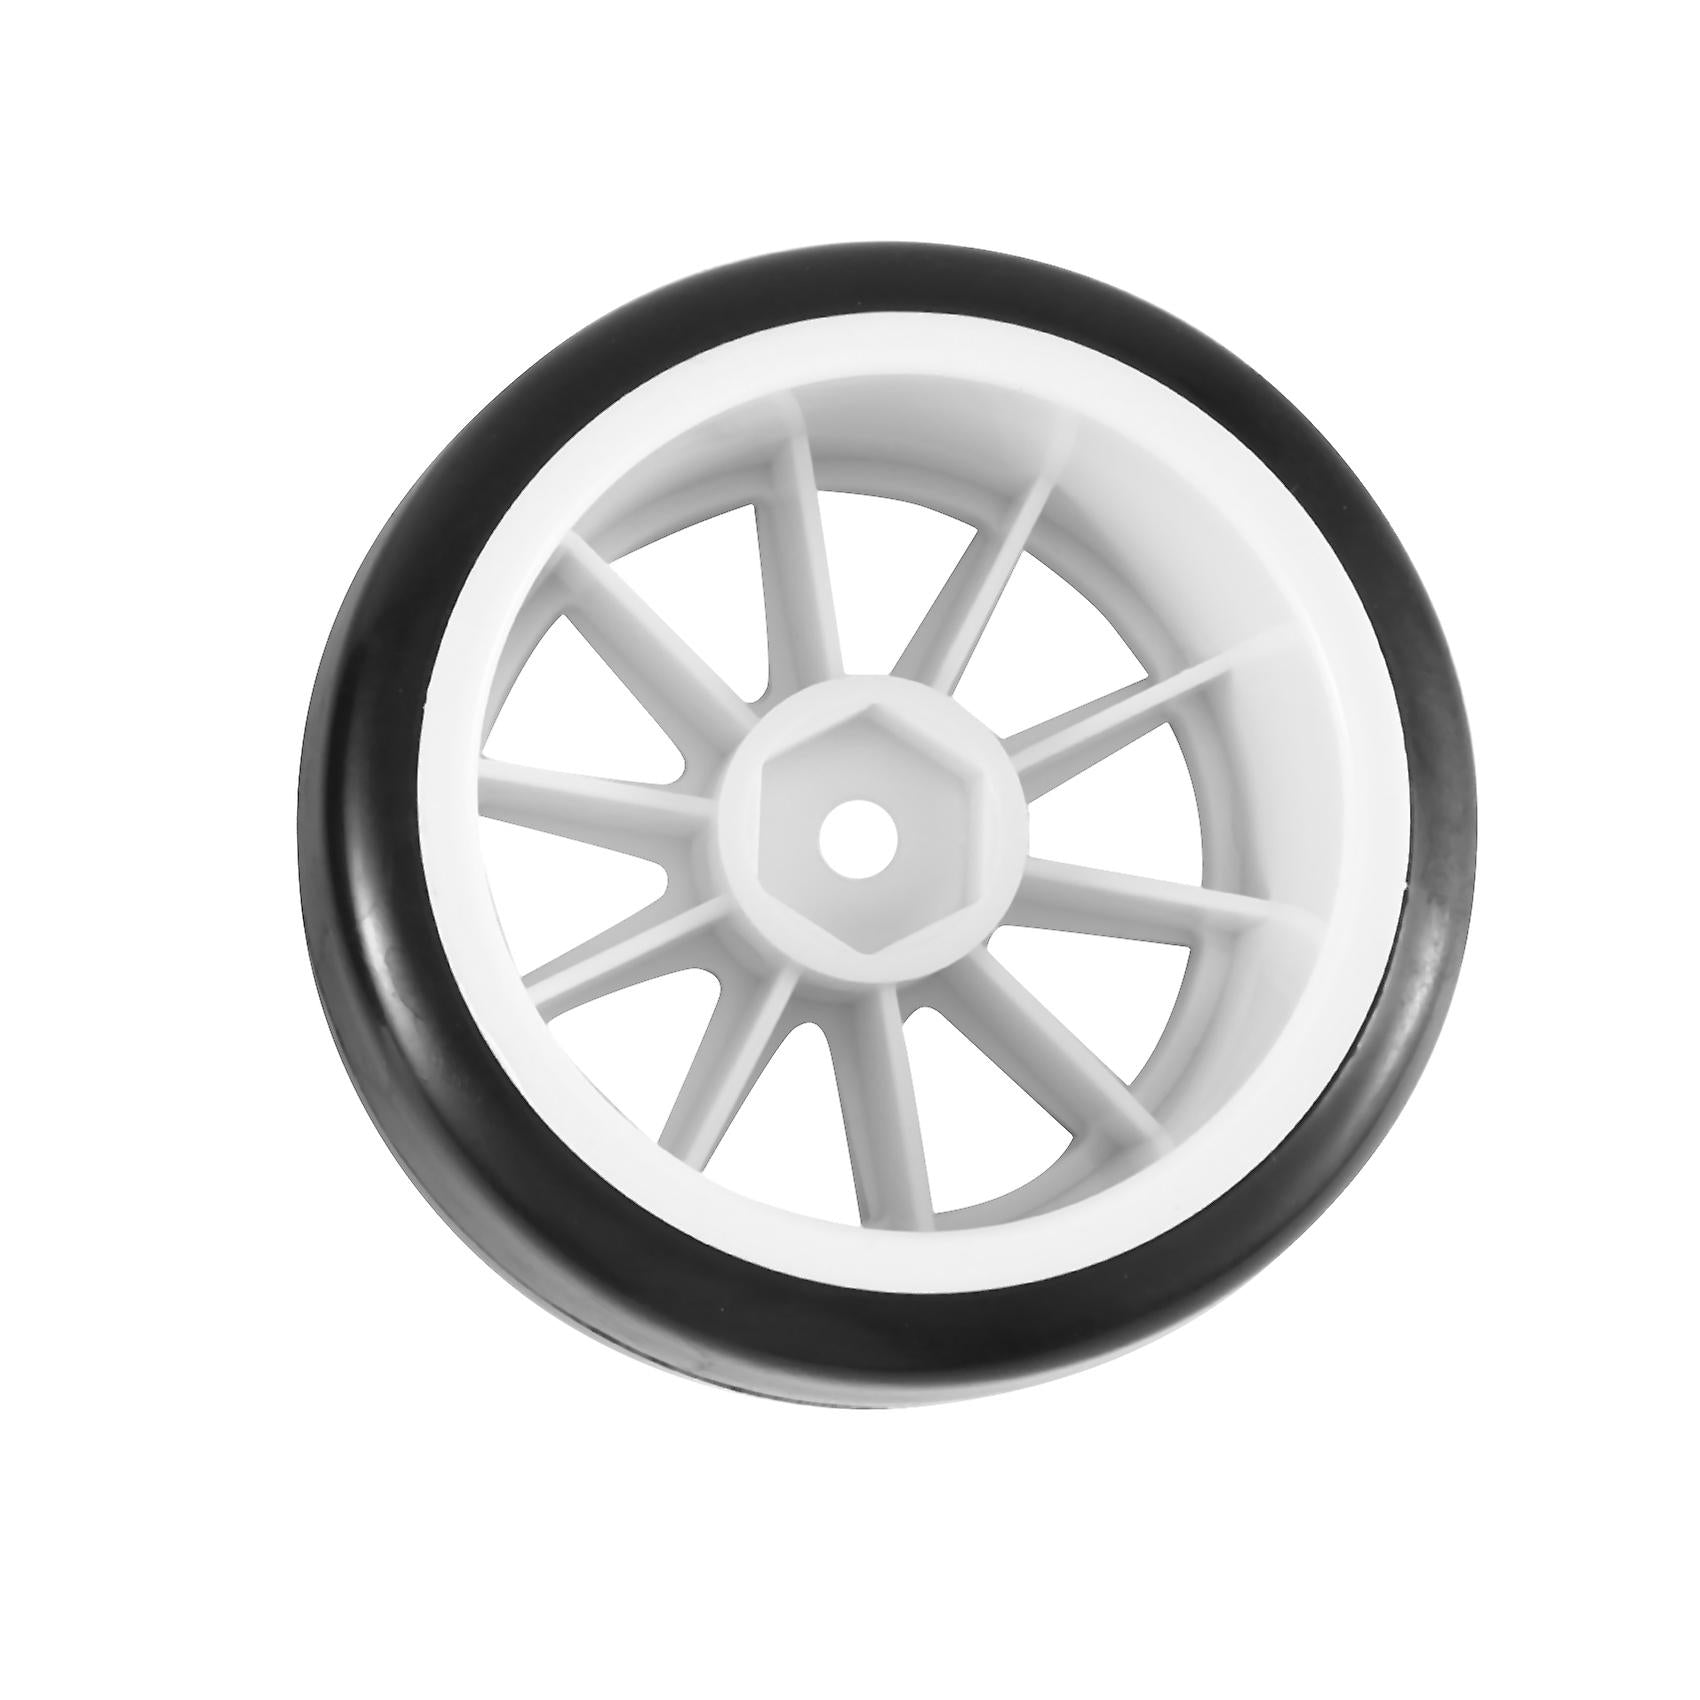 Λευκές ζάντες ProtonRC 1/10 Rc Car Rubber Tires On Road